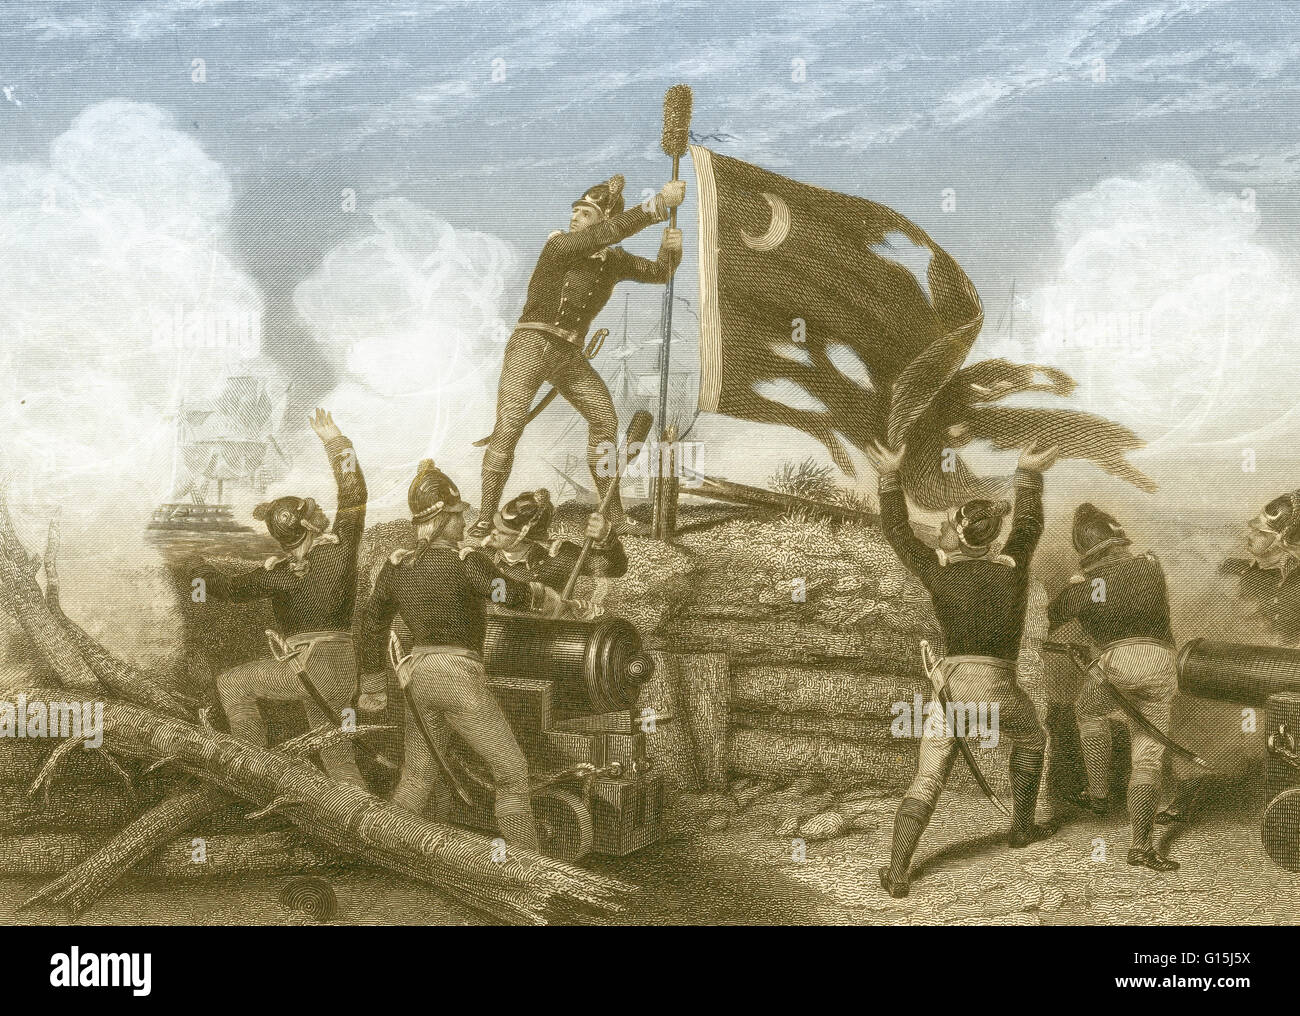 Renforcement de couleur illustration de la défense du fort Moultrie, SC en 1776. Le 28 juin, au début de la guerre de la Révolution américaine, de guerre britanniques attaquent le fort plus tard nommé d'après William Moultrie qui a commandé le régiment qui a défendu avec succès. T Banque D'Images